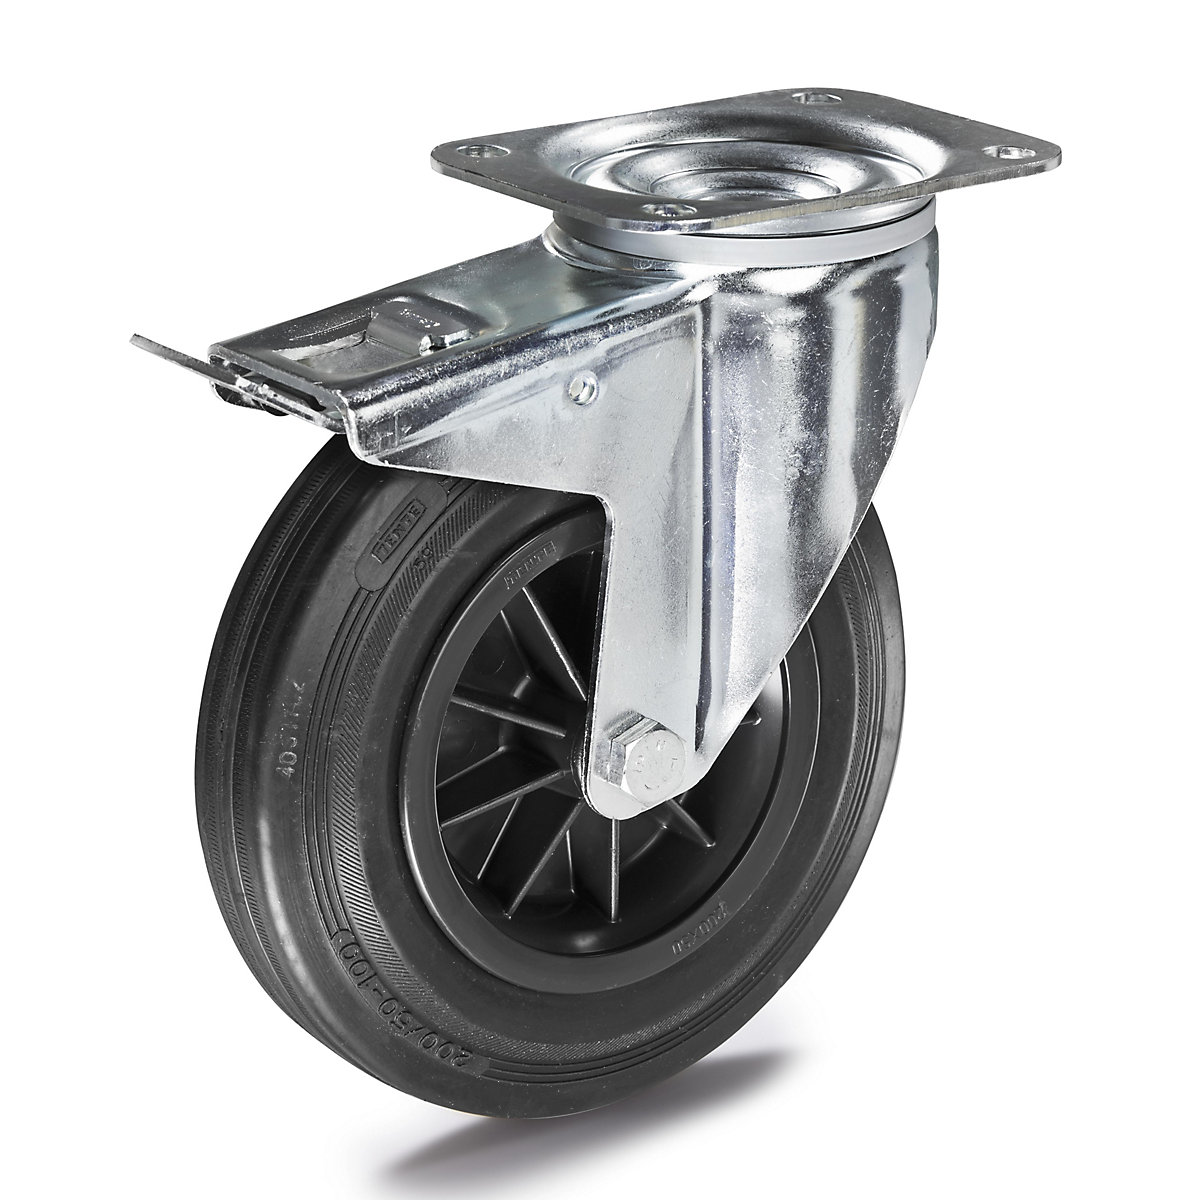 Celogumová obruč na plastovom disku – TENTE, Ø x šírka kolesa 160 x 40 mm, otočné koliesko s dvojitou brzdou-3